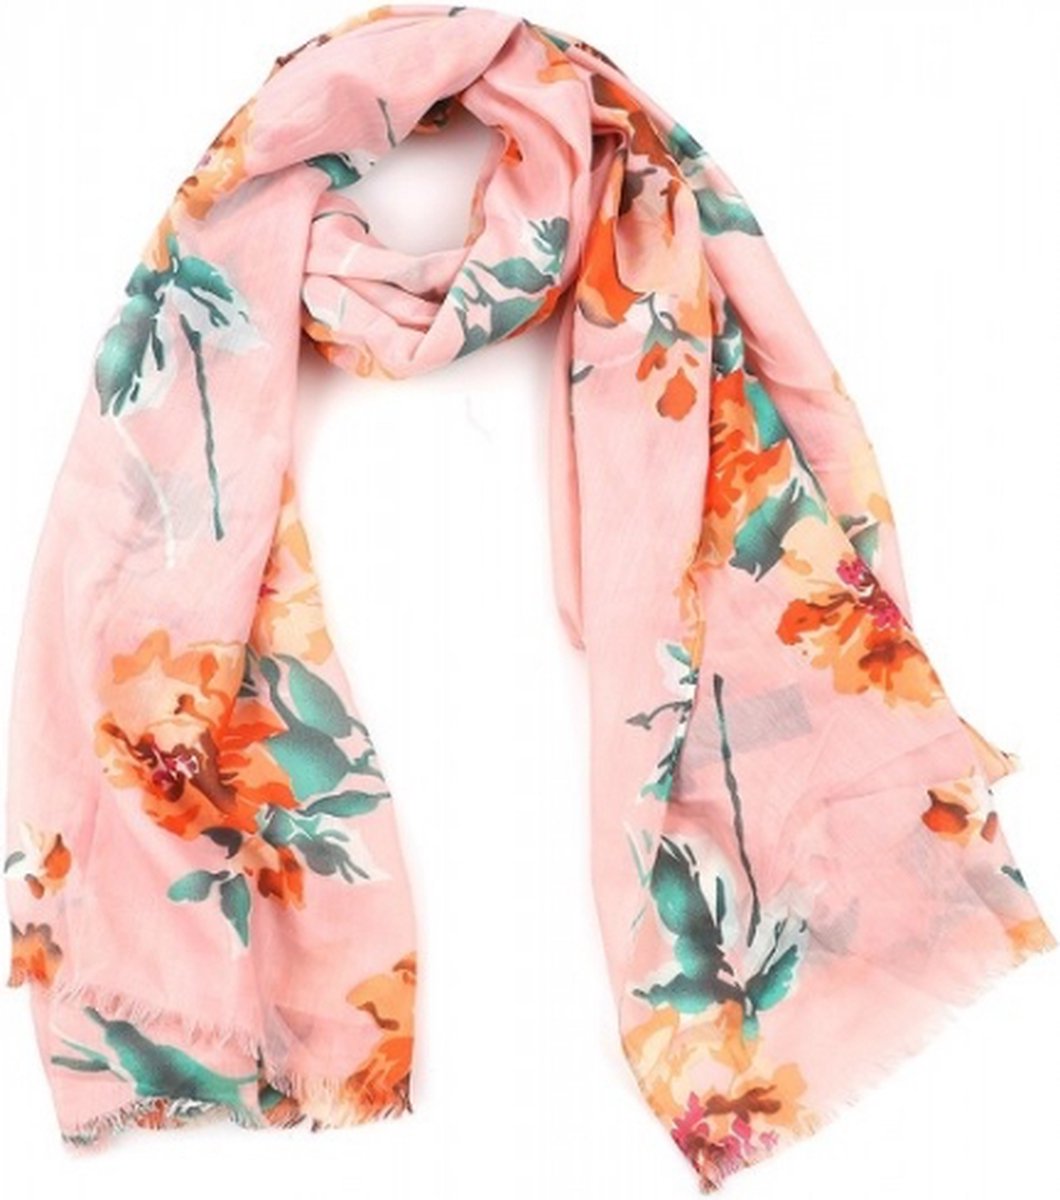 Sjaal met bloemen roze